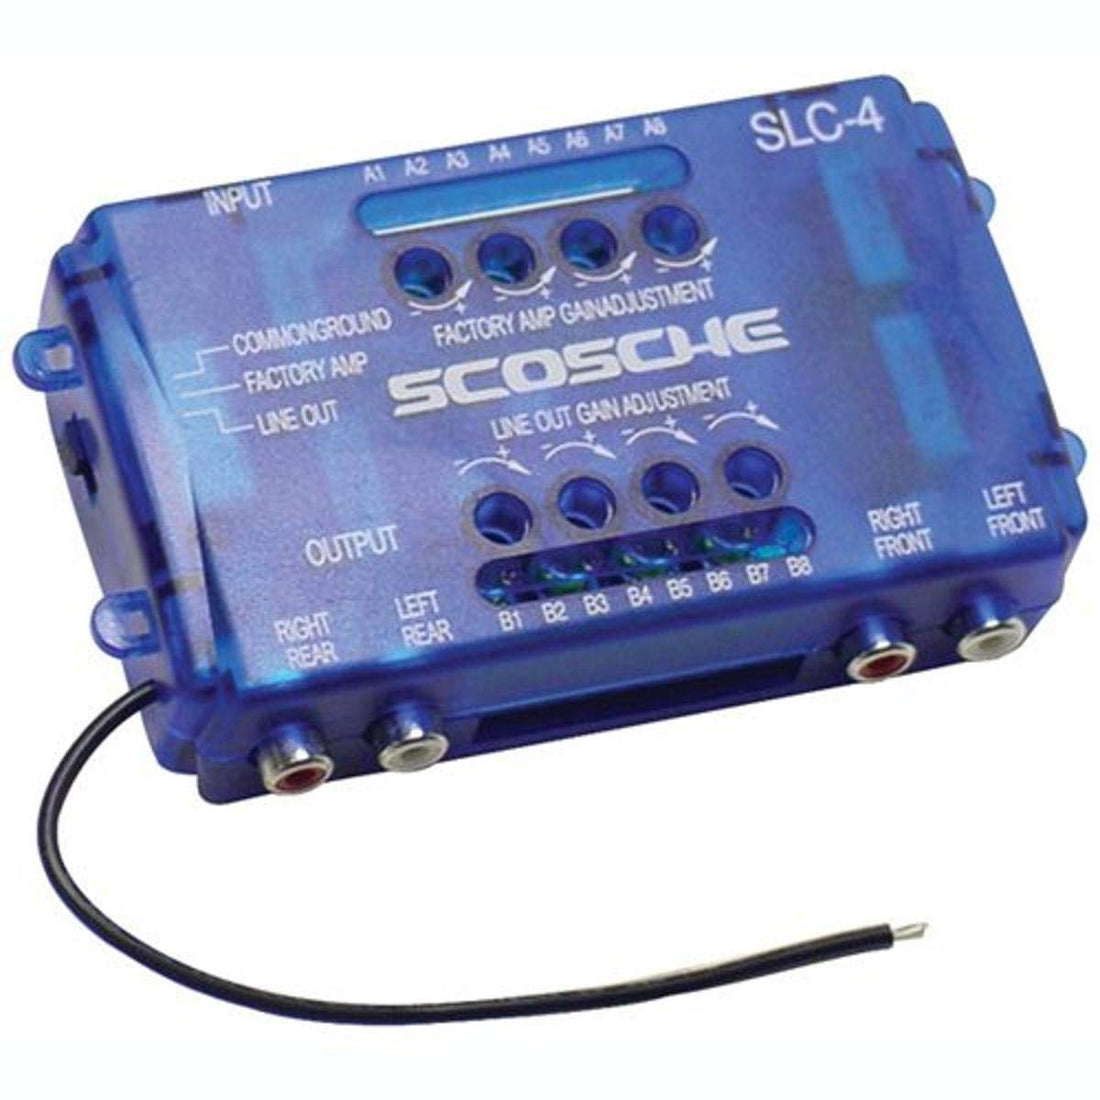 Scosche SLC4 Speaker Level Converter With 80 Watt Max